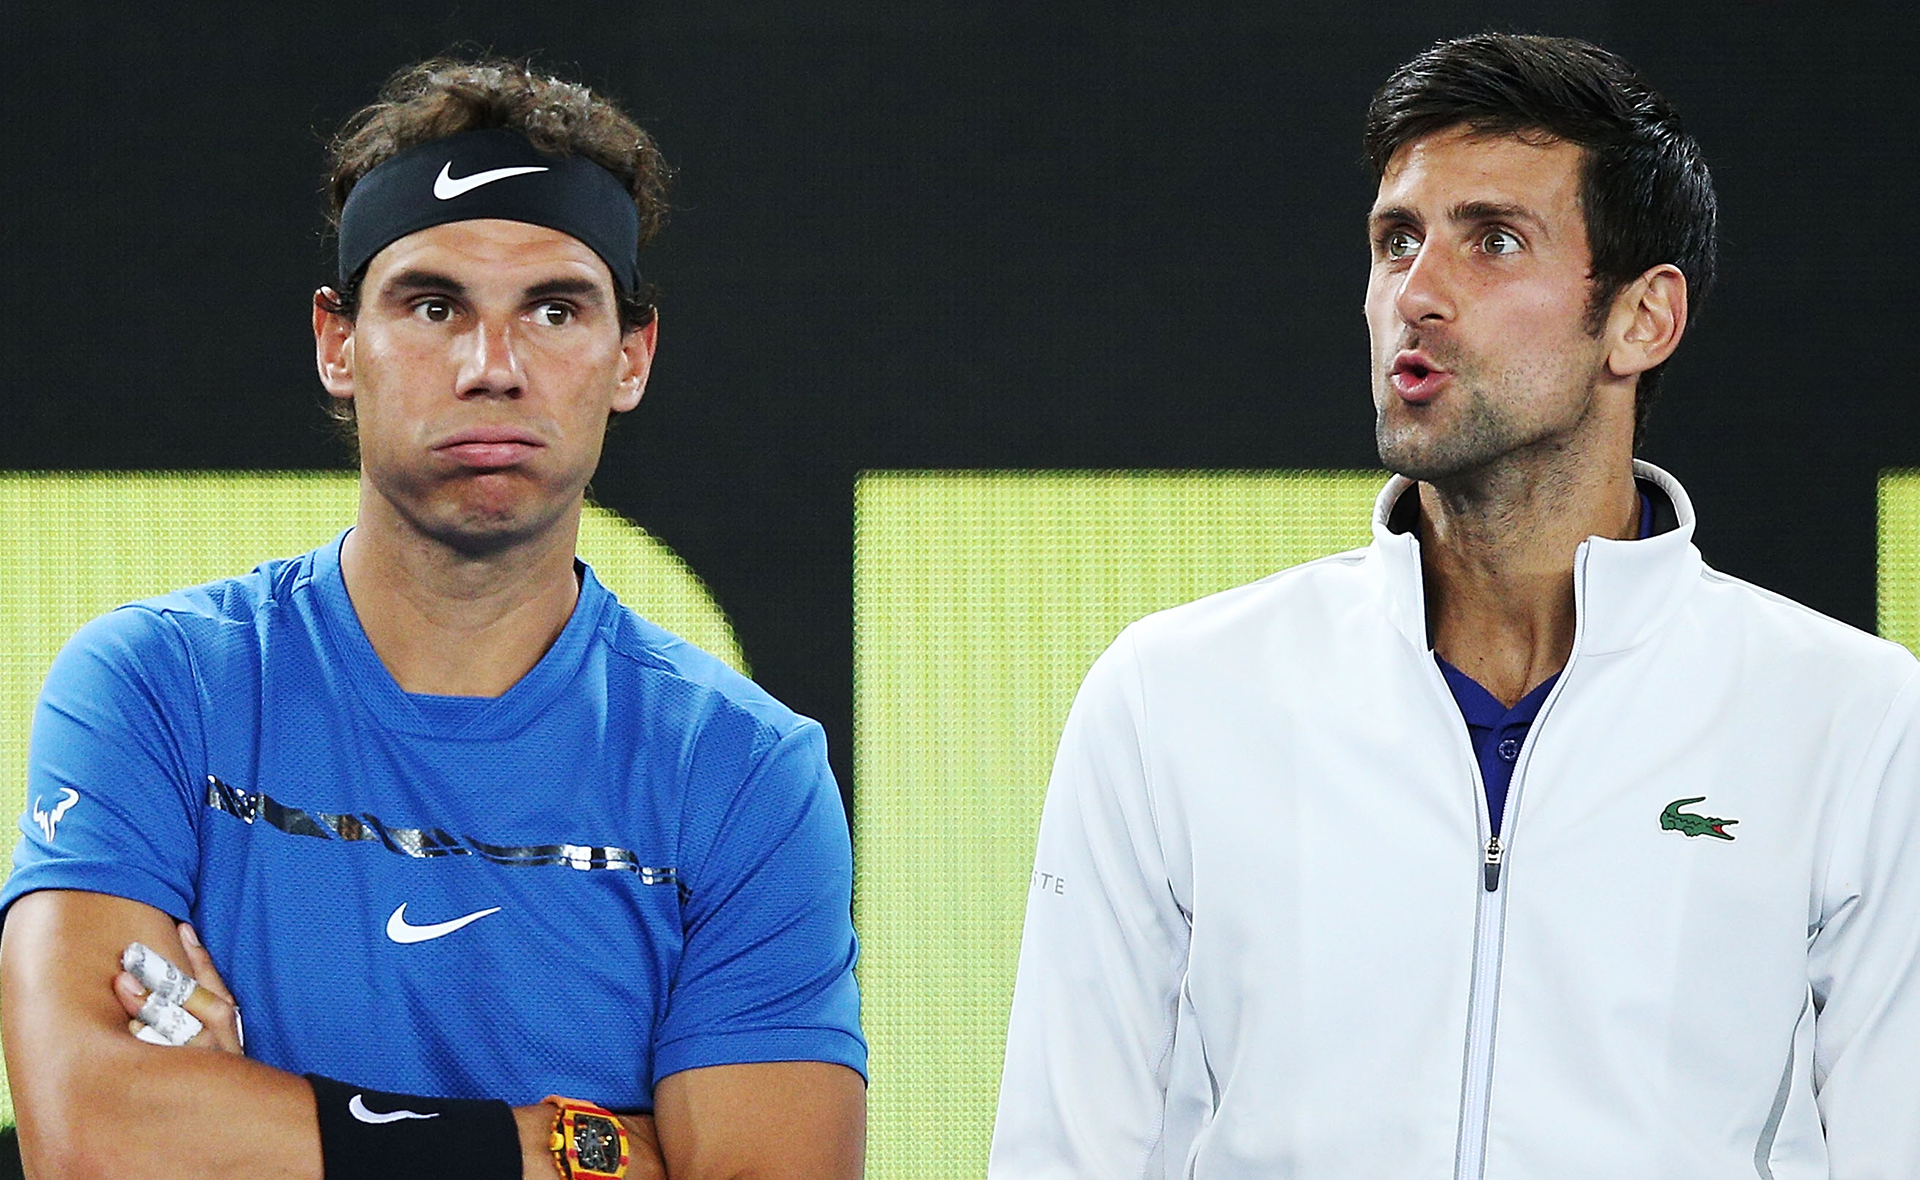 EXCLUSIVE: Australian Open tennis stars left in crisis over Novak Djokovic’s vaccine exemption turmoil